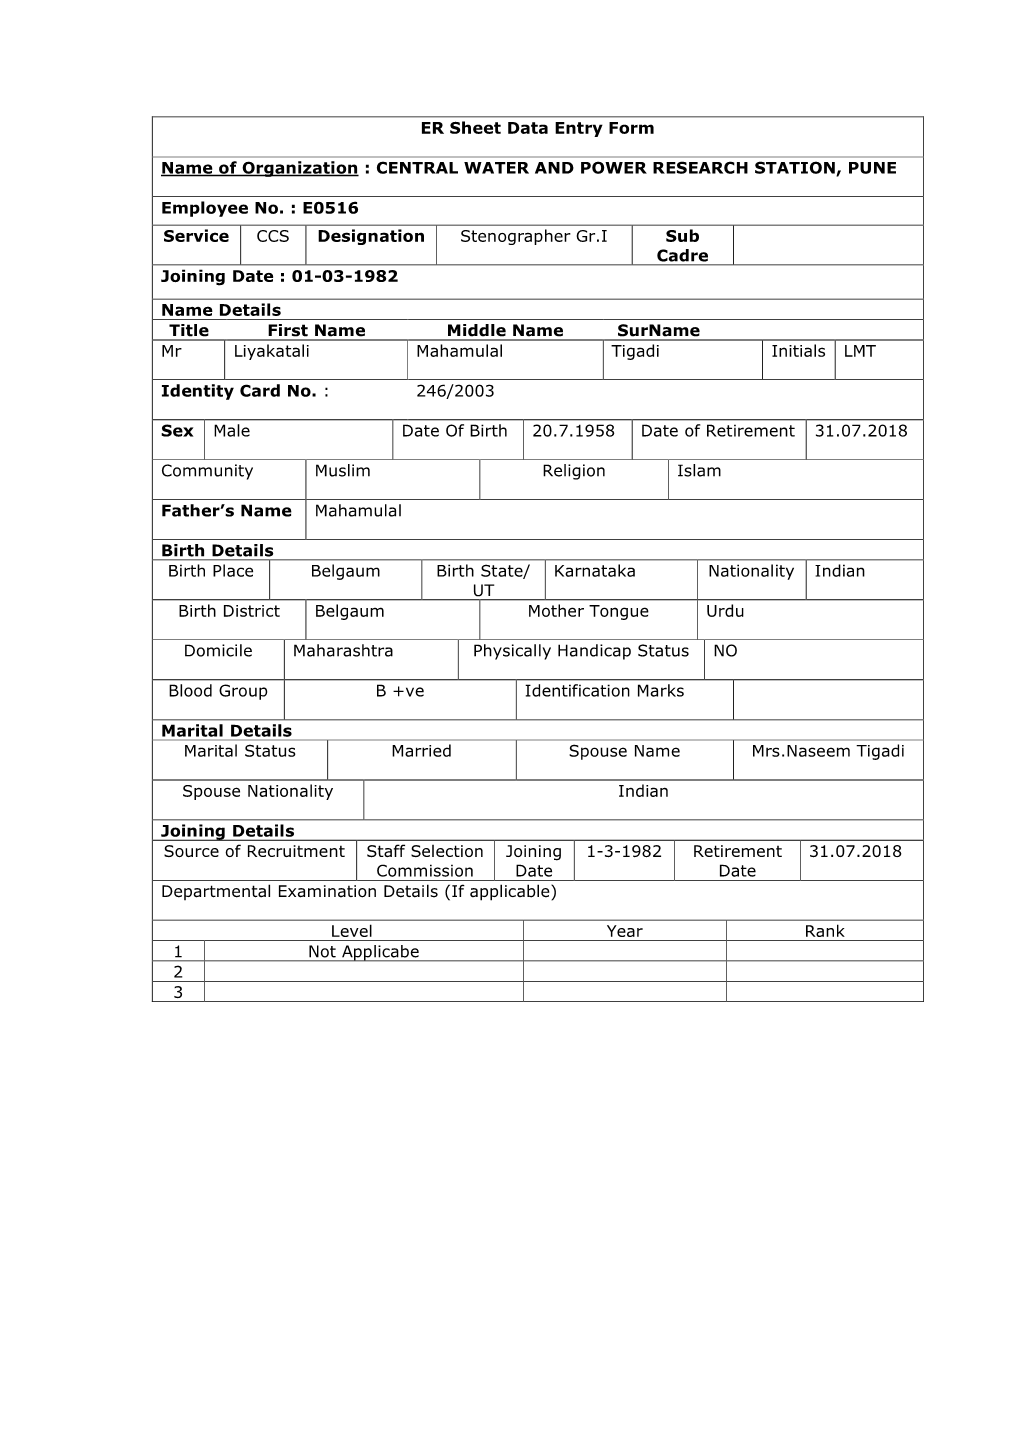 ER Sheet Data Entry Form Name of Organization : CENTRAL